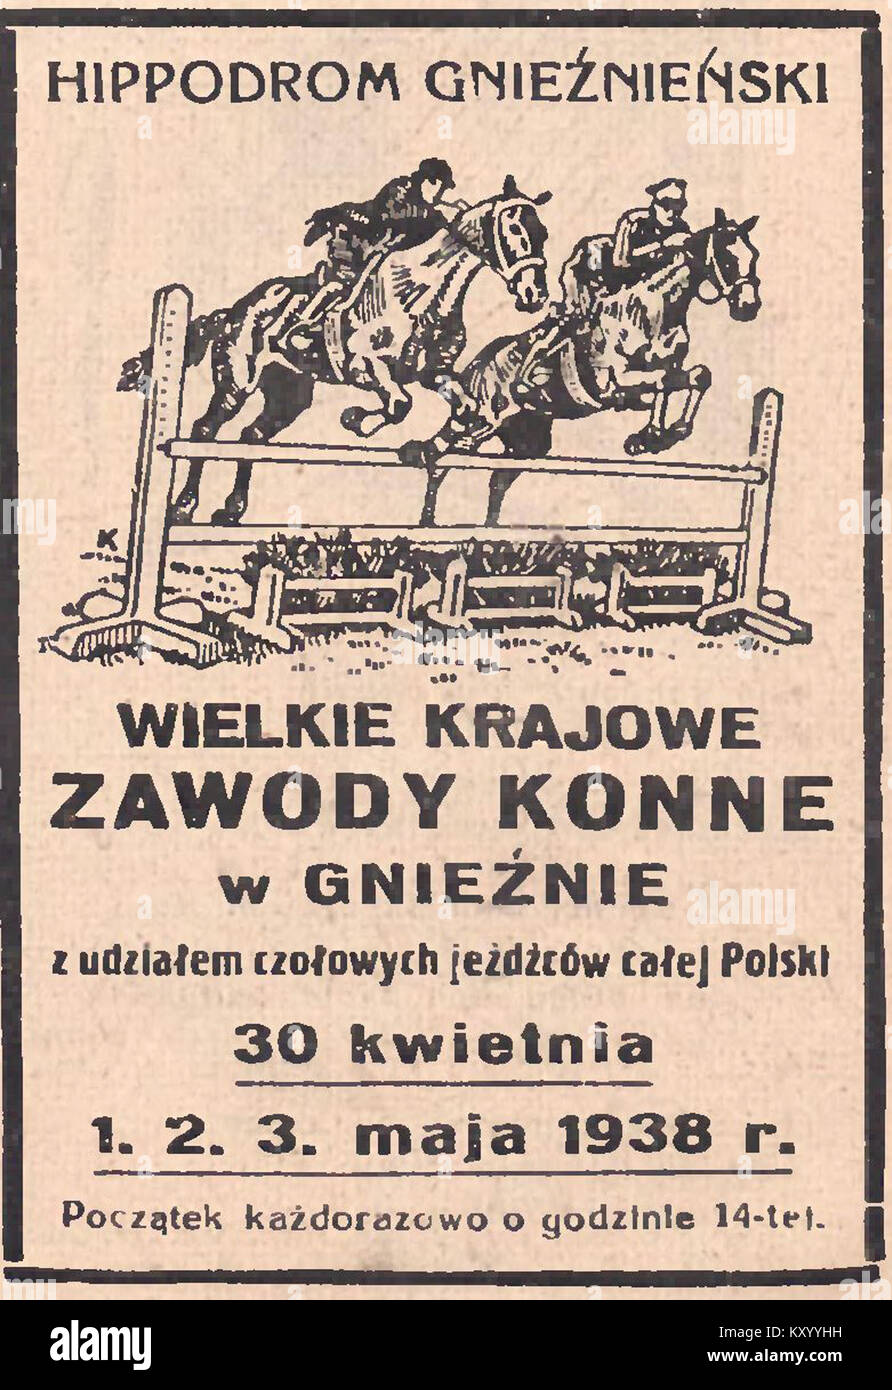 Ippodromo gnieźnieński - Wielkie zawody konne w Gnieźnie, 1938 Foto Stock